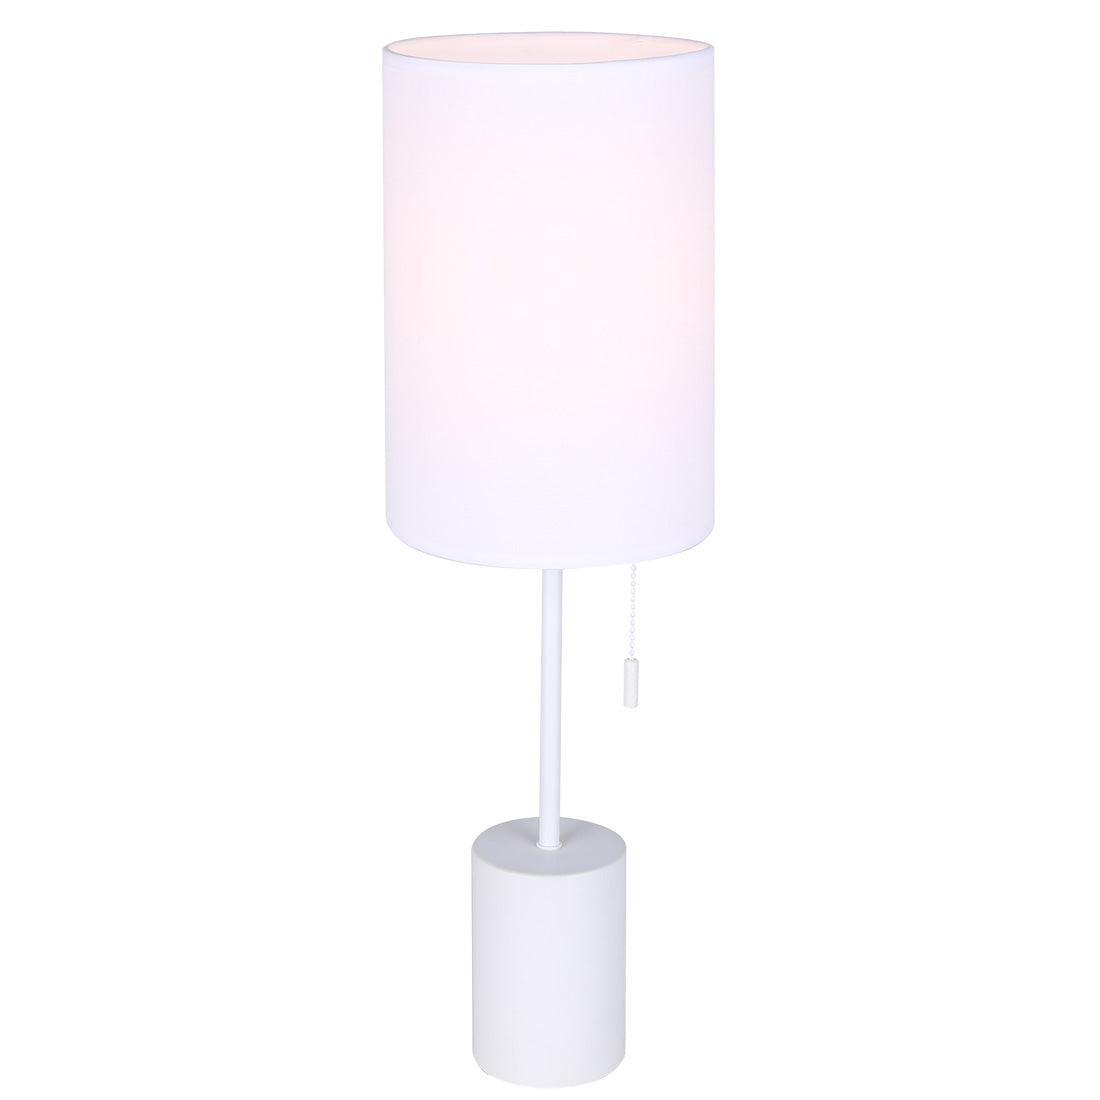 FLINT Lampe sur table Blanc - ITL1164A23WH | CANARM